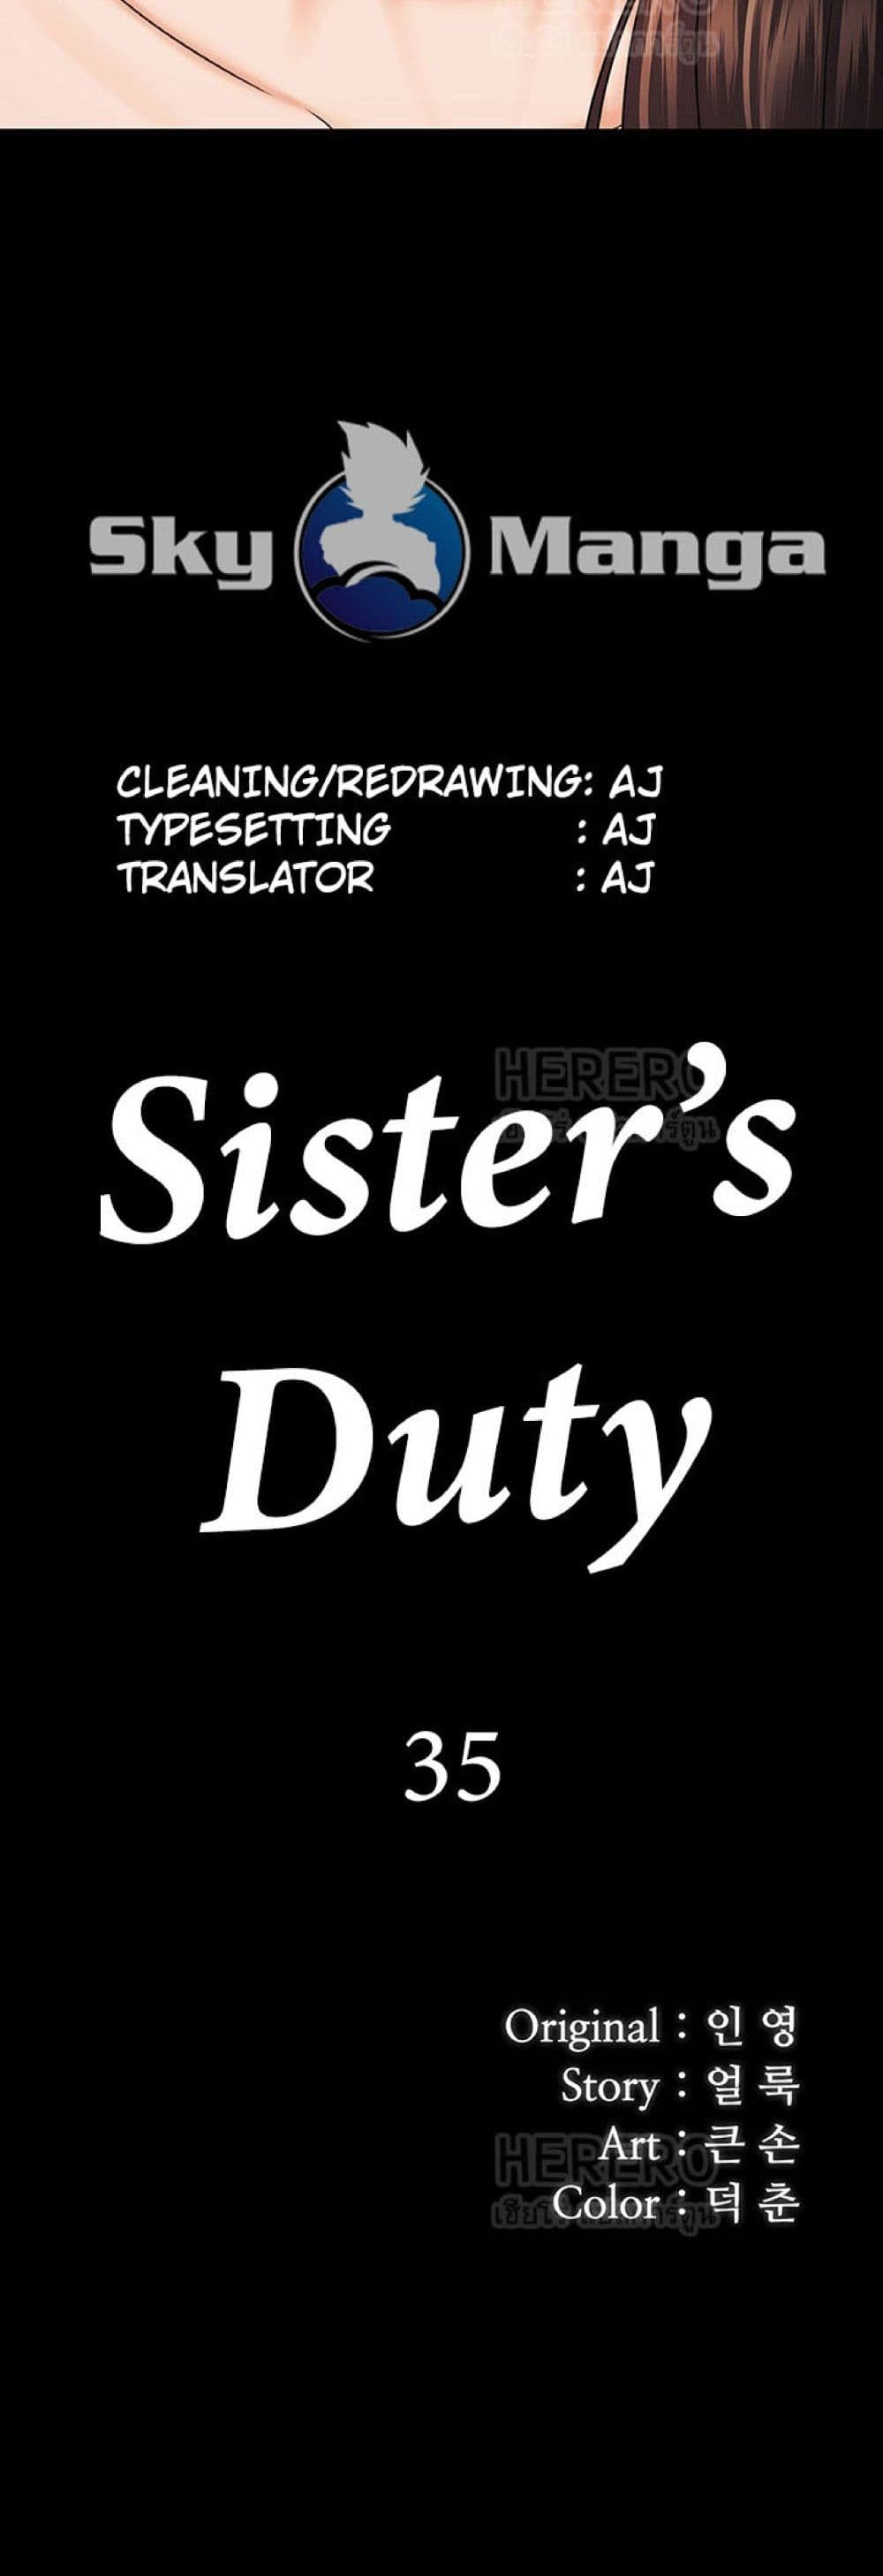 Sister's Duty 35-35